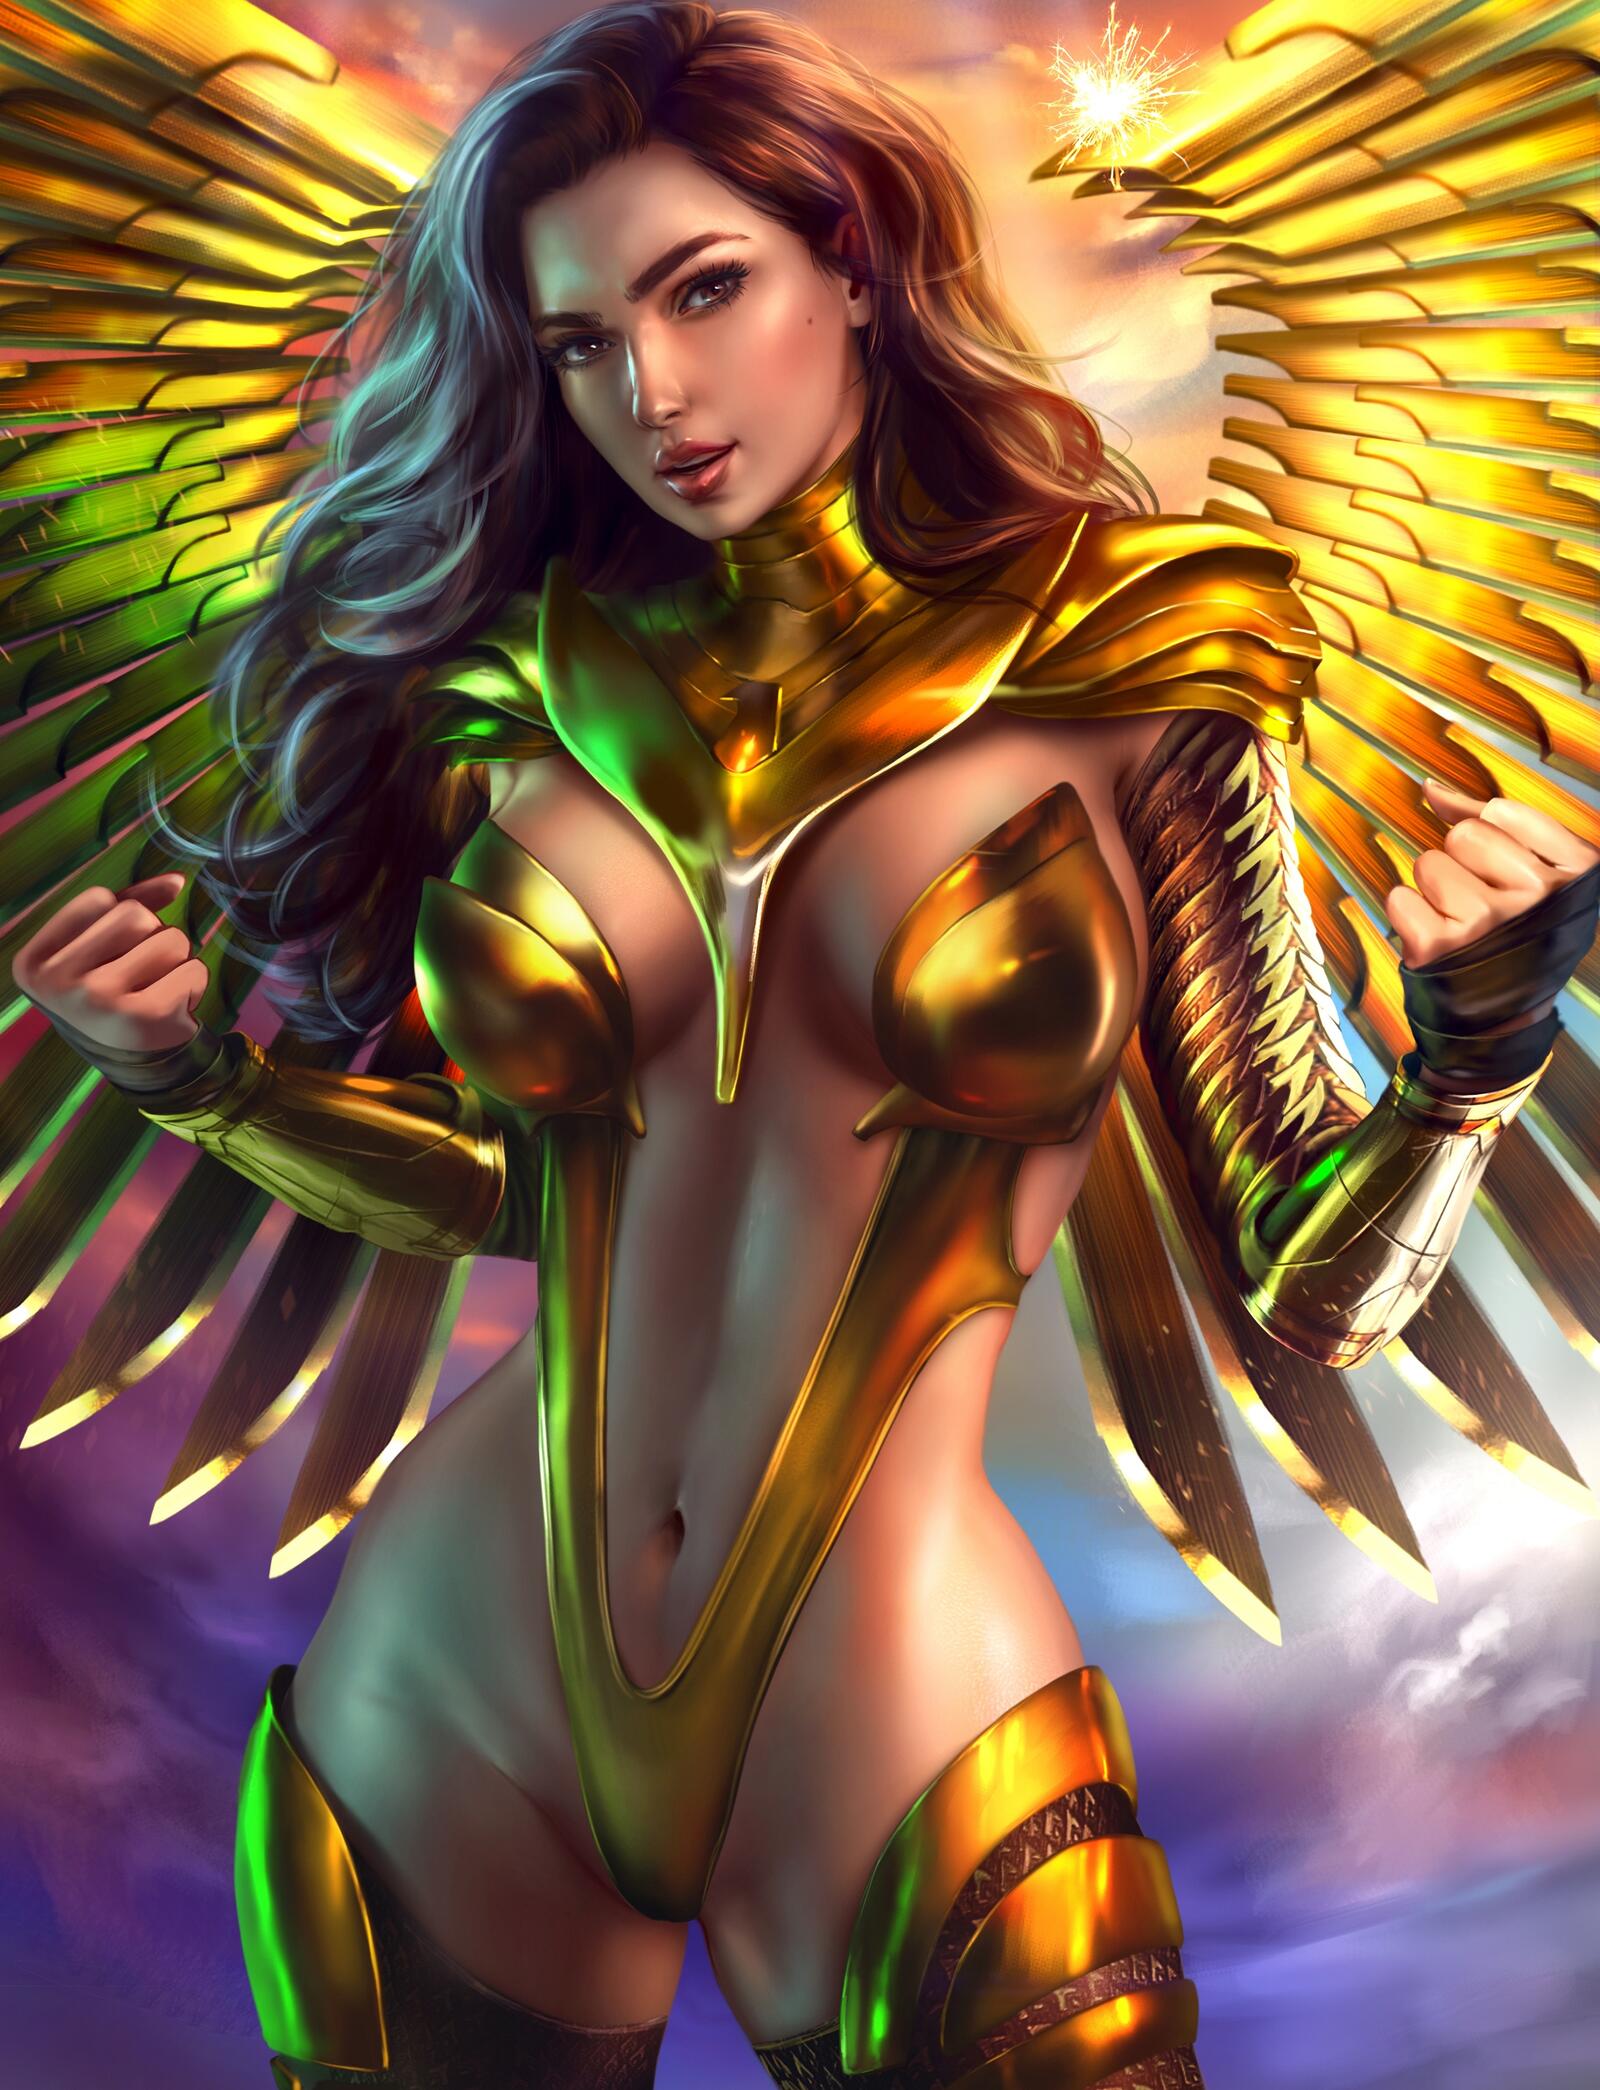 免费照片Wonder woman in a golden angel ouftit